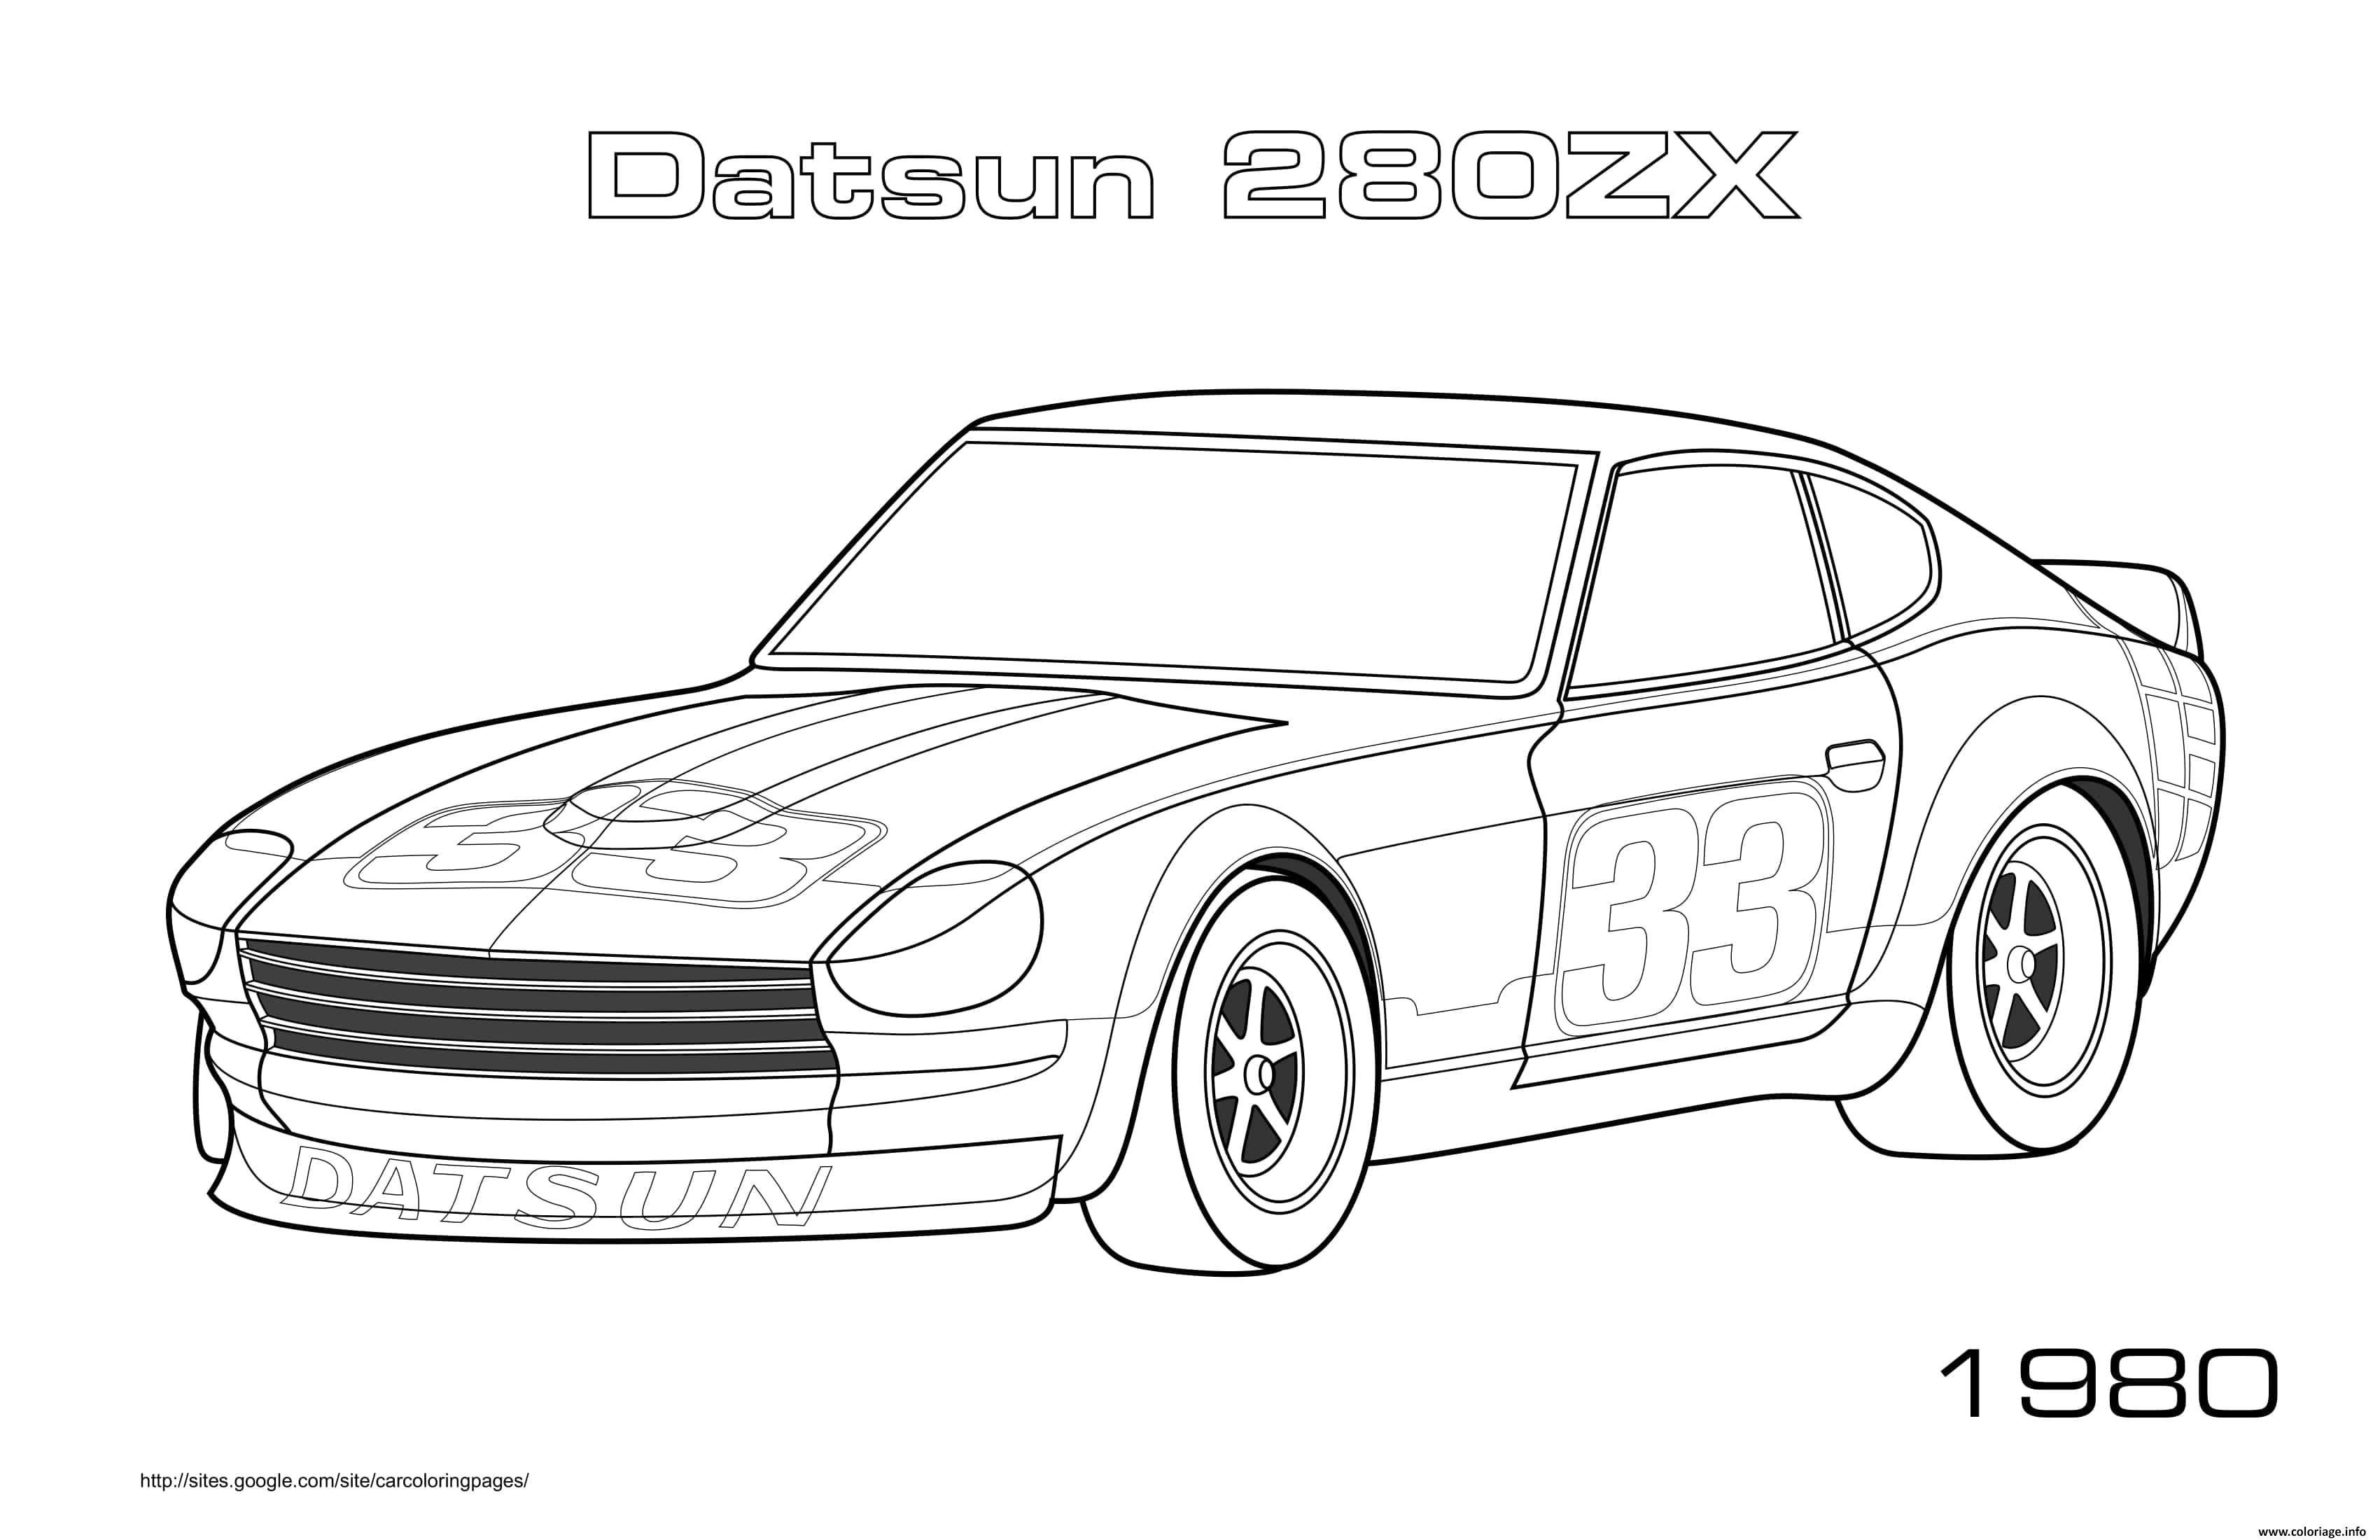 Dessin Datsun 280zx 1980 Coloriage Gratuit à Imprimer